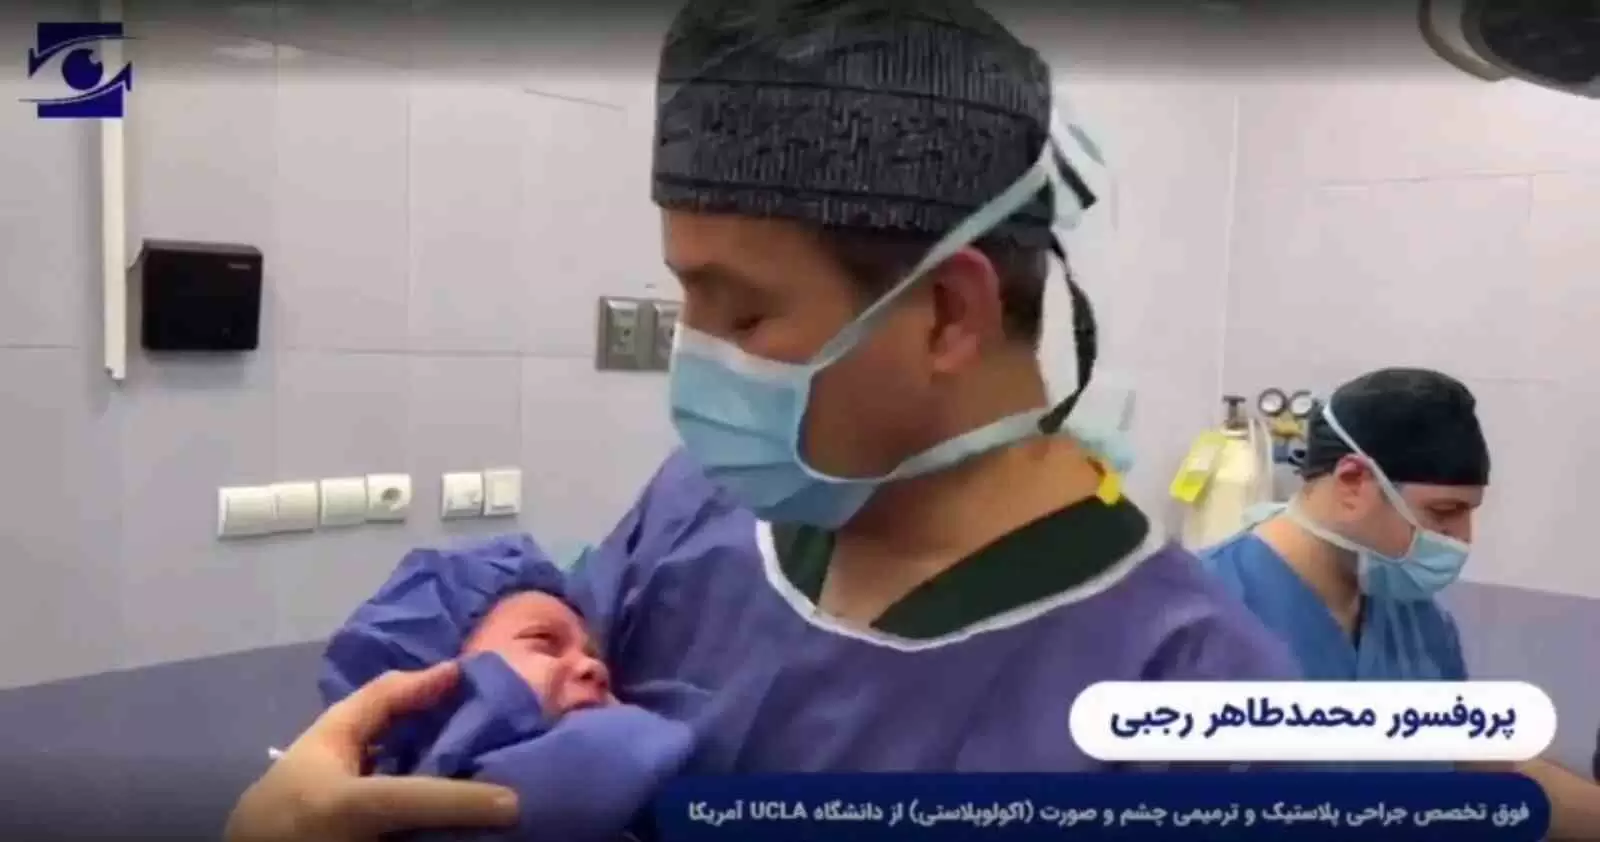 ویدئو: جراحی تومور کاسه چشم در نوزاد چهارماهه